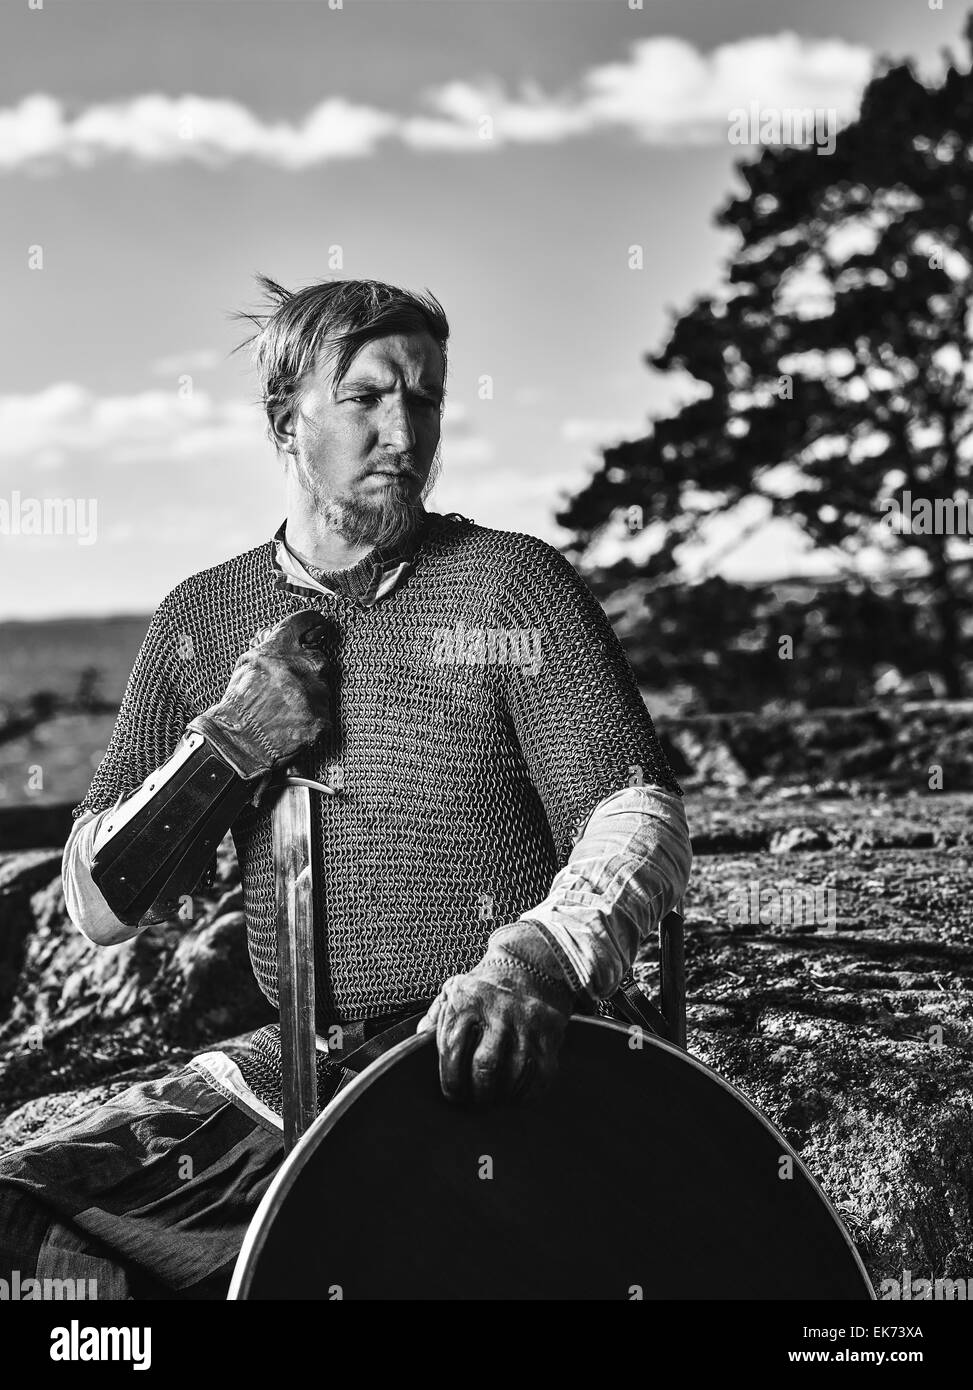 Guerrier viking médiéval portant des cottes de mailles, il a l'épée et le bouclier, sur la nature du fond, image en noir et blanc Banque D'Images